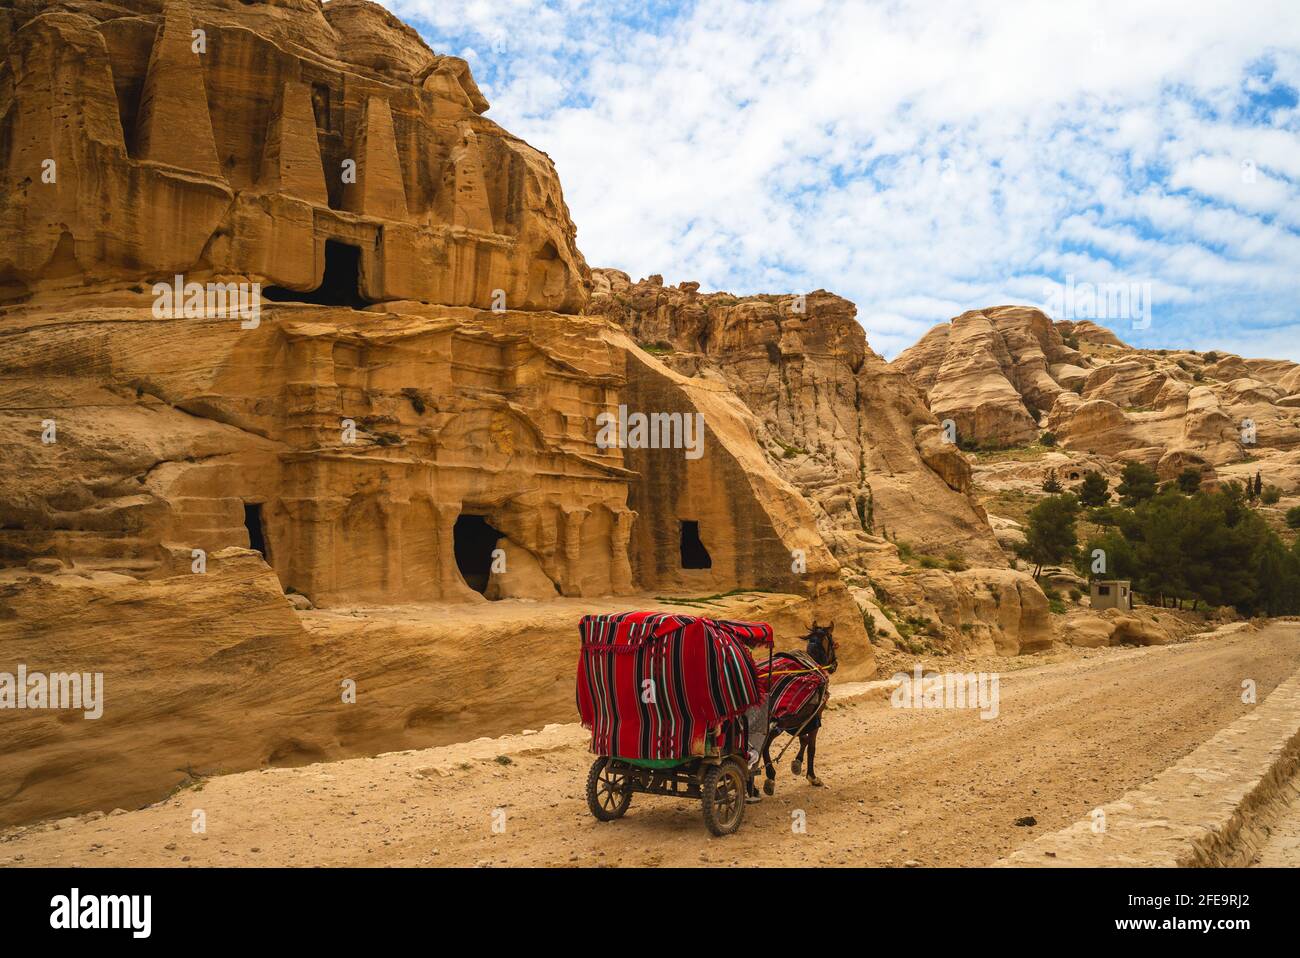 Carro de caballos y Tumba Obelisco, un monumento nabateo en petra, jordania Foto de stock